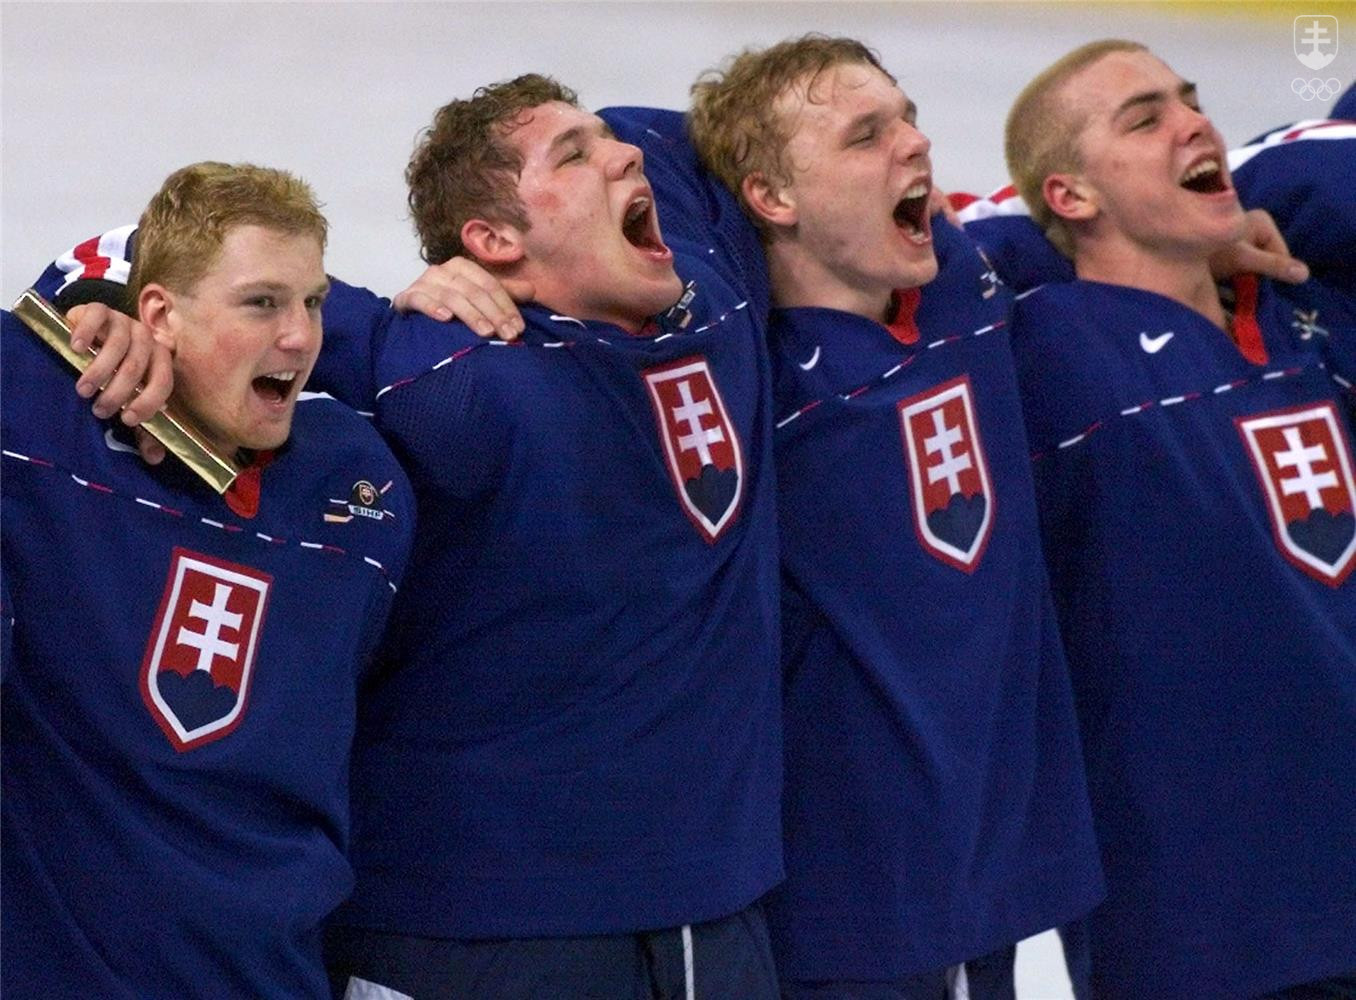 Oduševnený spev hymny slovenských hokejistov (zľava Michal Košík, Ján Lašák, Zoltán Bátovský, Michal Hudec) po zápase o bronz na MS do 20 rokov 1999 vo Winnipegu. 